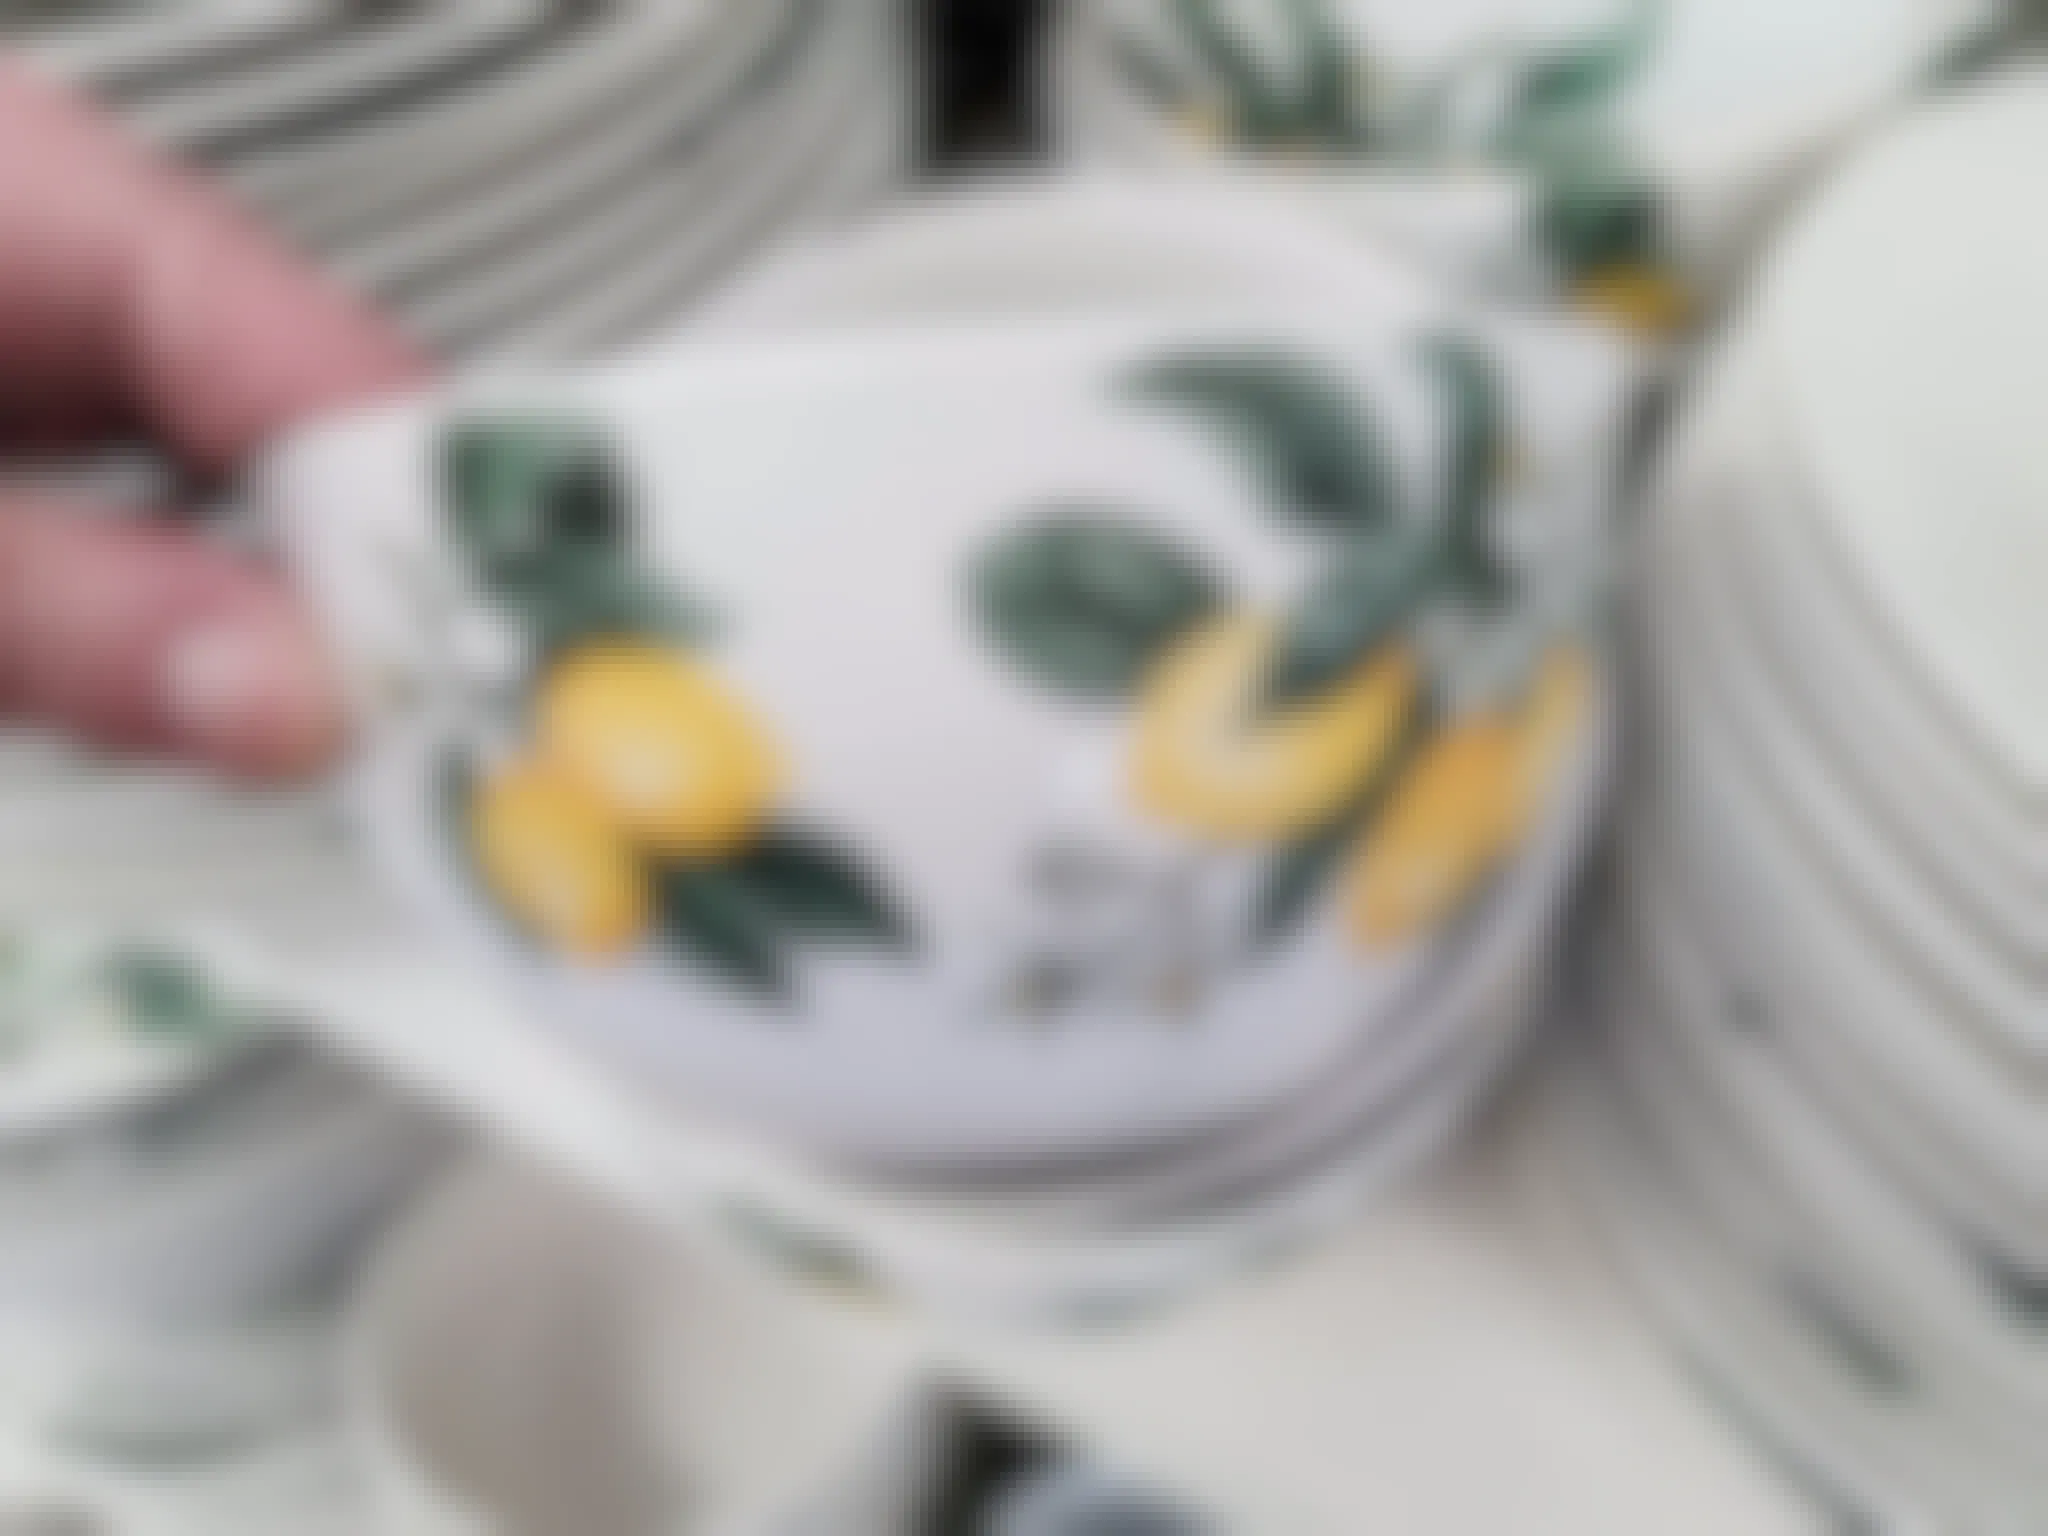 lemon printed bowl